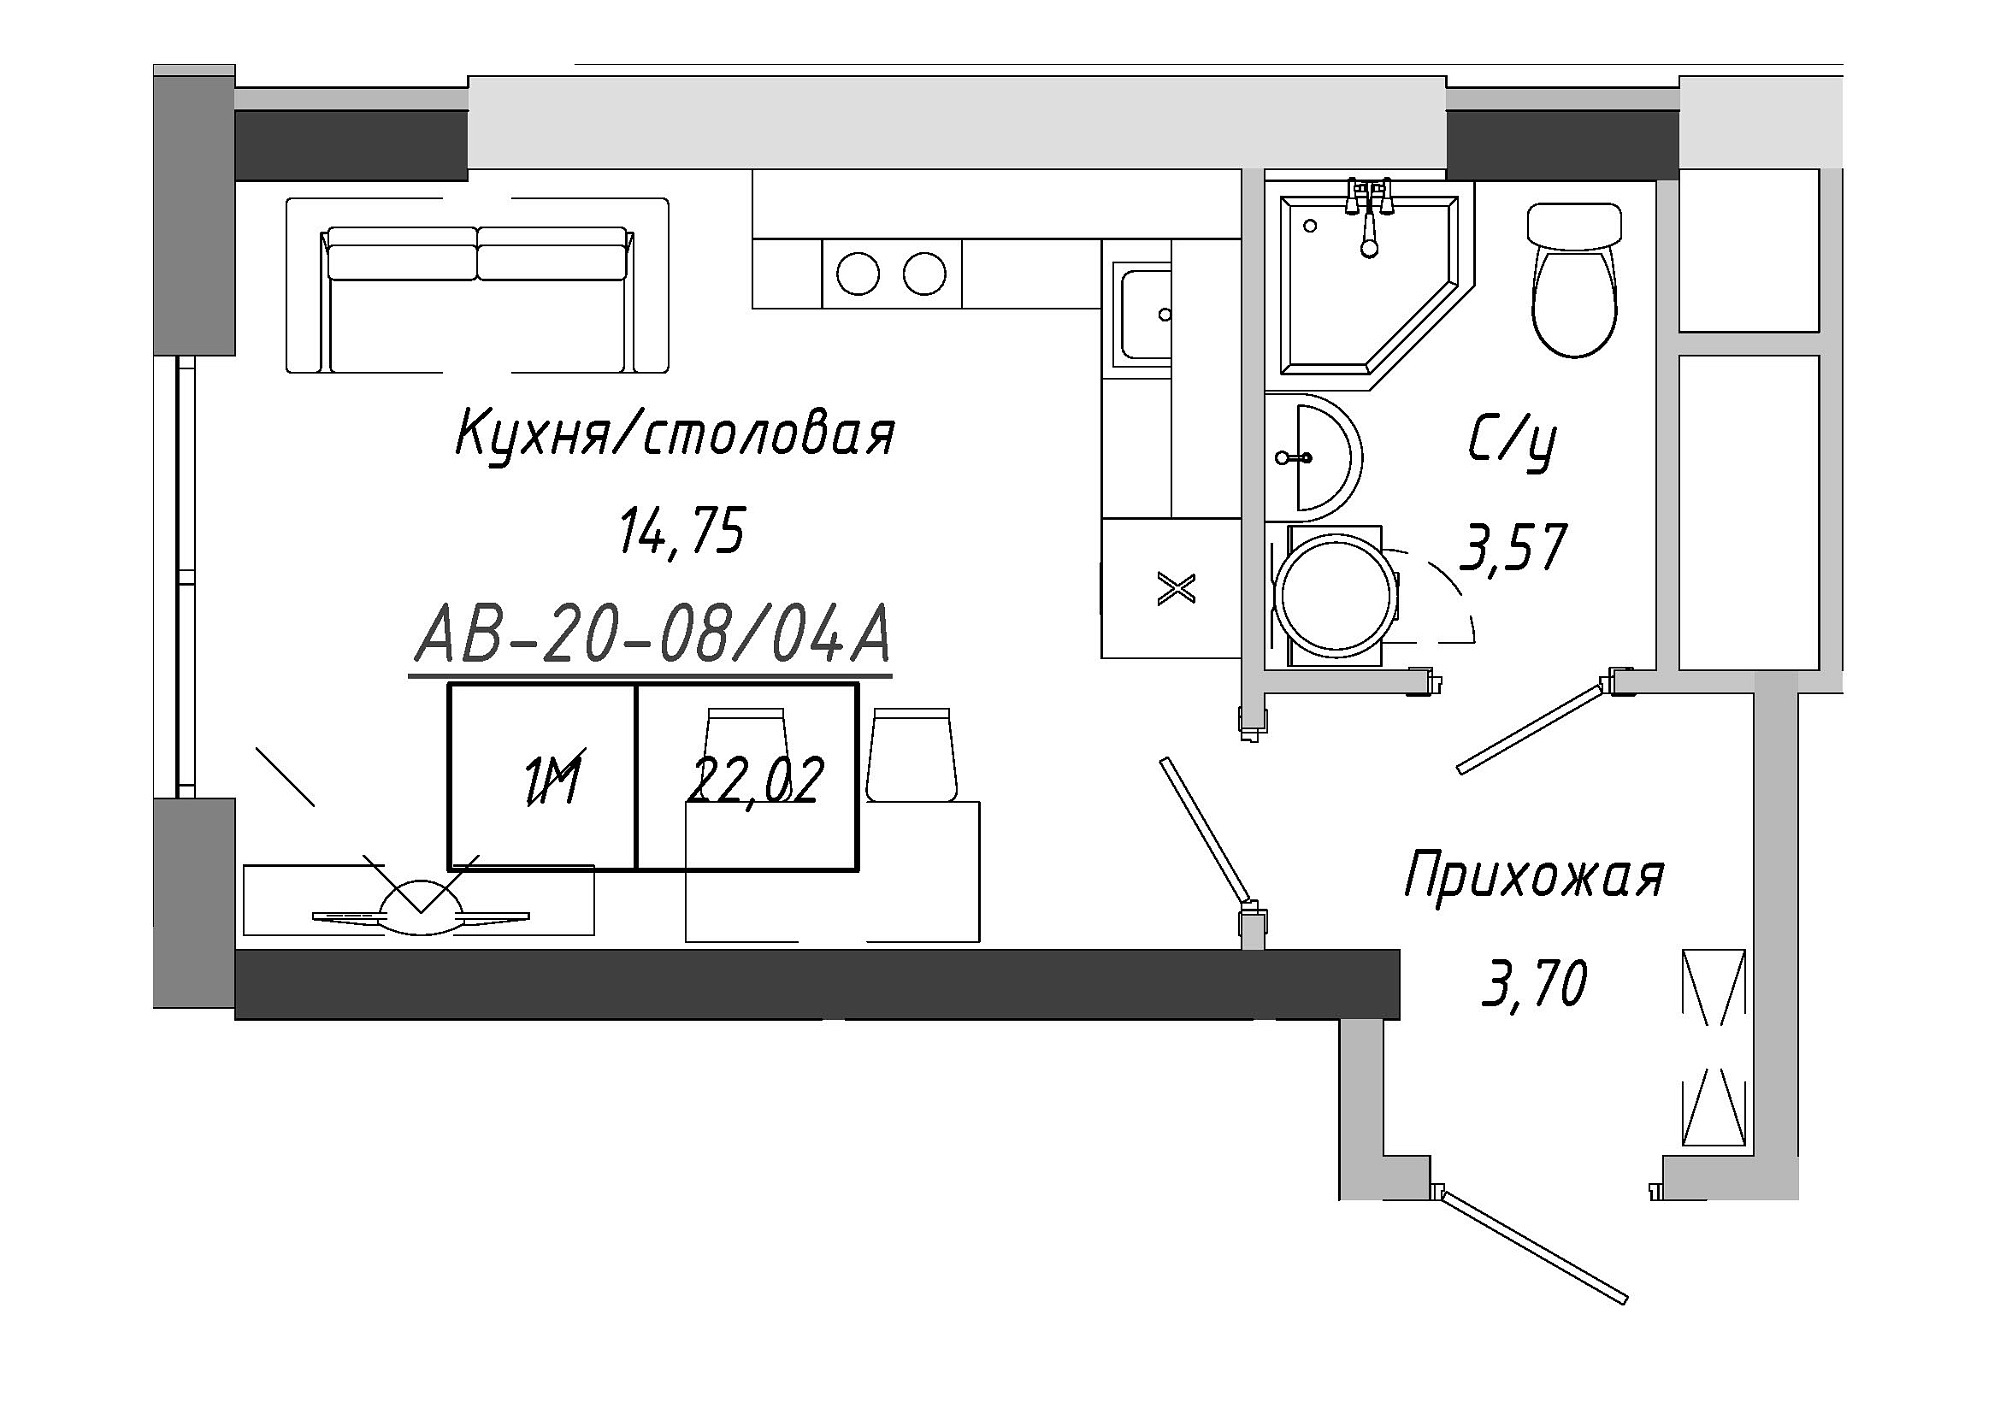 Планування Smart-квартира площею 21.3м2, AB-20-08/0004а.